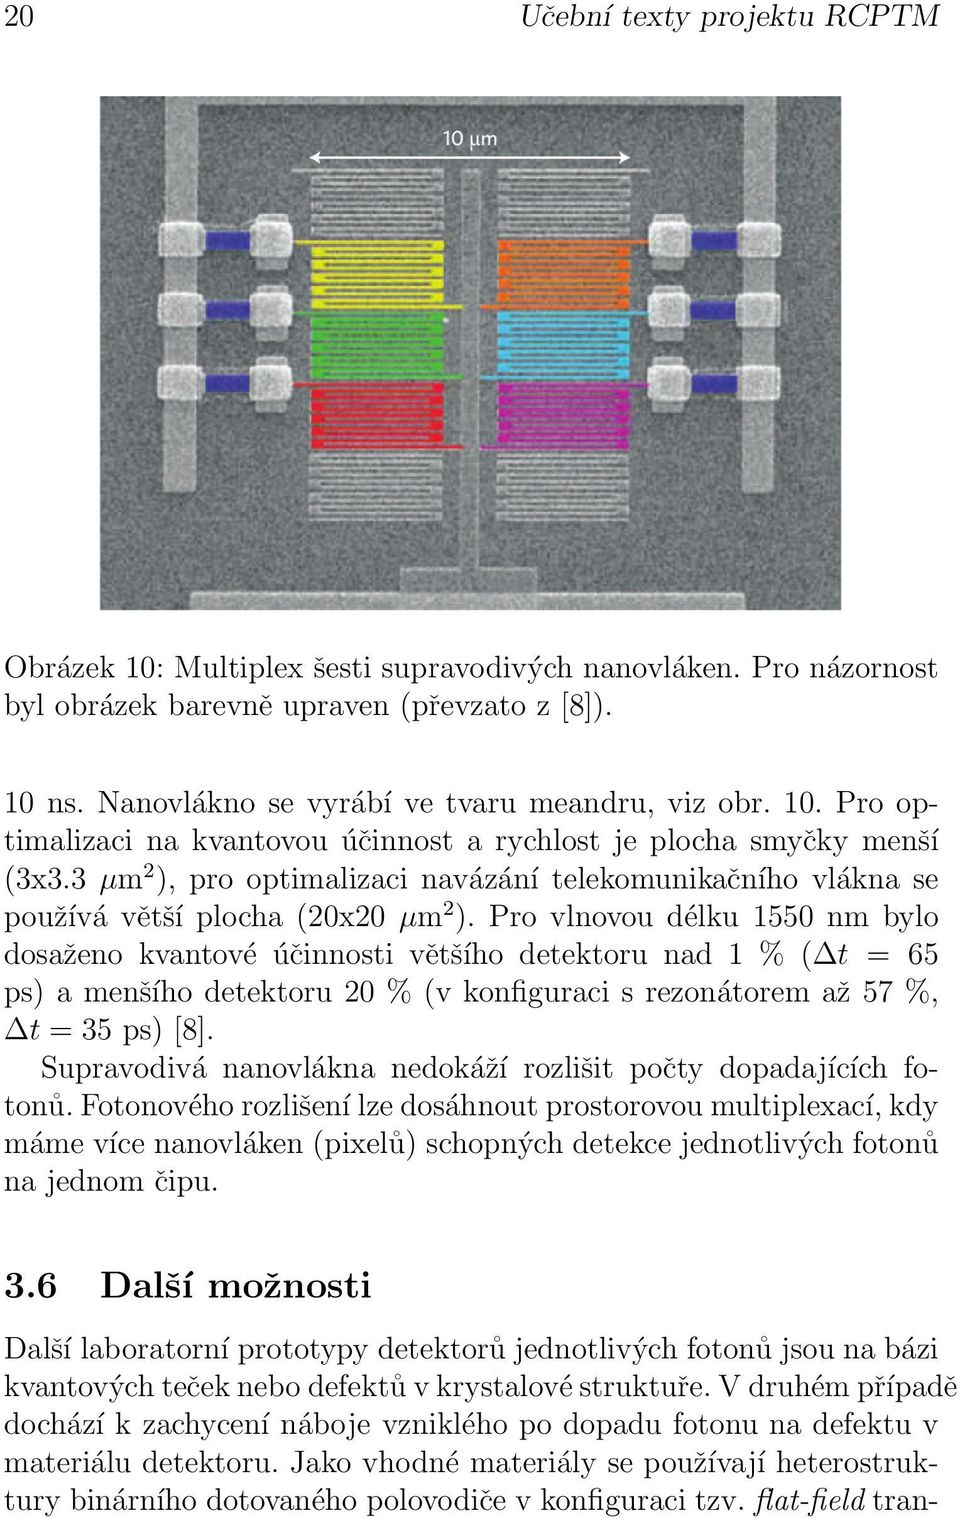 nm bylo dosaženo kvantové účinnosti většího detektoru nad 1 % ( t = 65 ps) a menšího detektoru 20 % (v konfiguraci s rezonátorem až 57 %, t = 35 ps) [8] Supravodivá nanovlákna nedokáží rozlišit počty